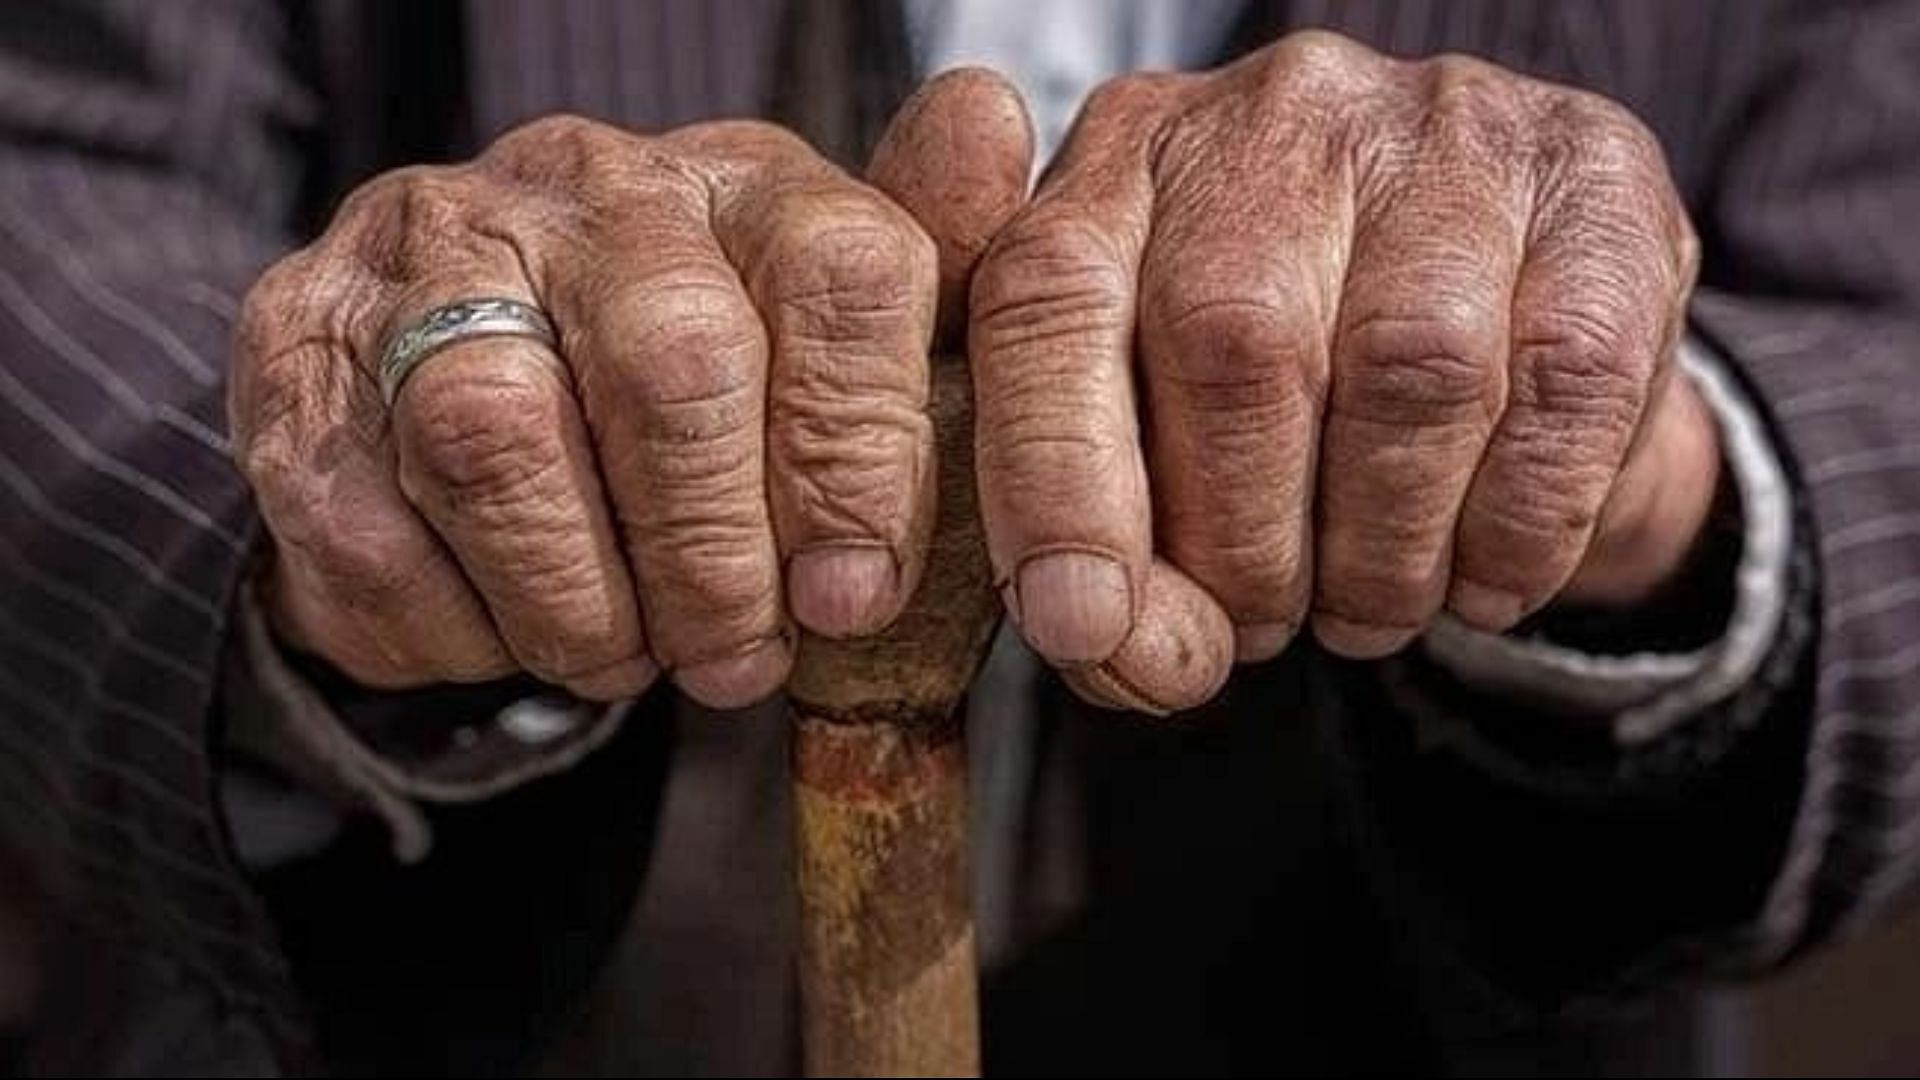 <div class="paragraphs"><p>बुजुर्गों के लिए कितना तैयार भारत? 2050 में बूढ़ों की आबादी होगी 30 करोड़: नीति आयोग</p></div>